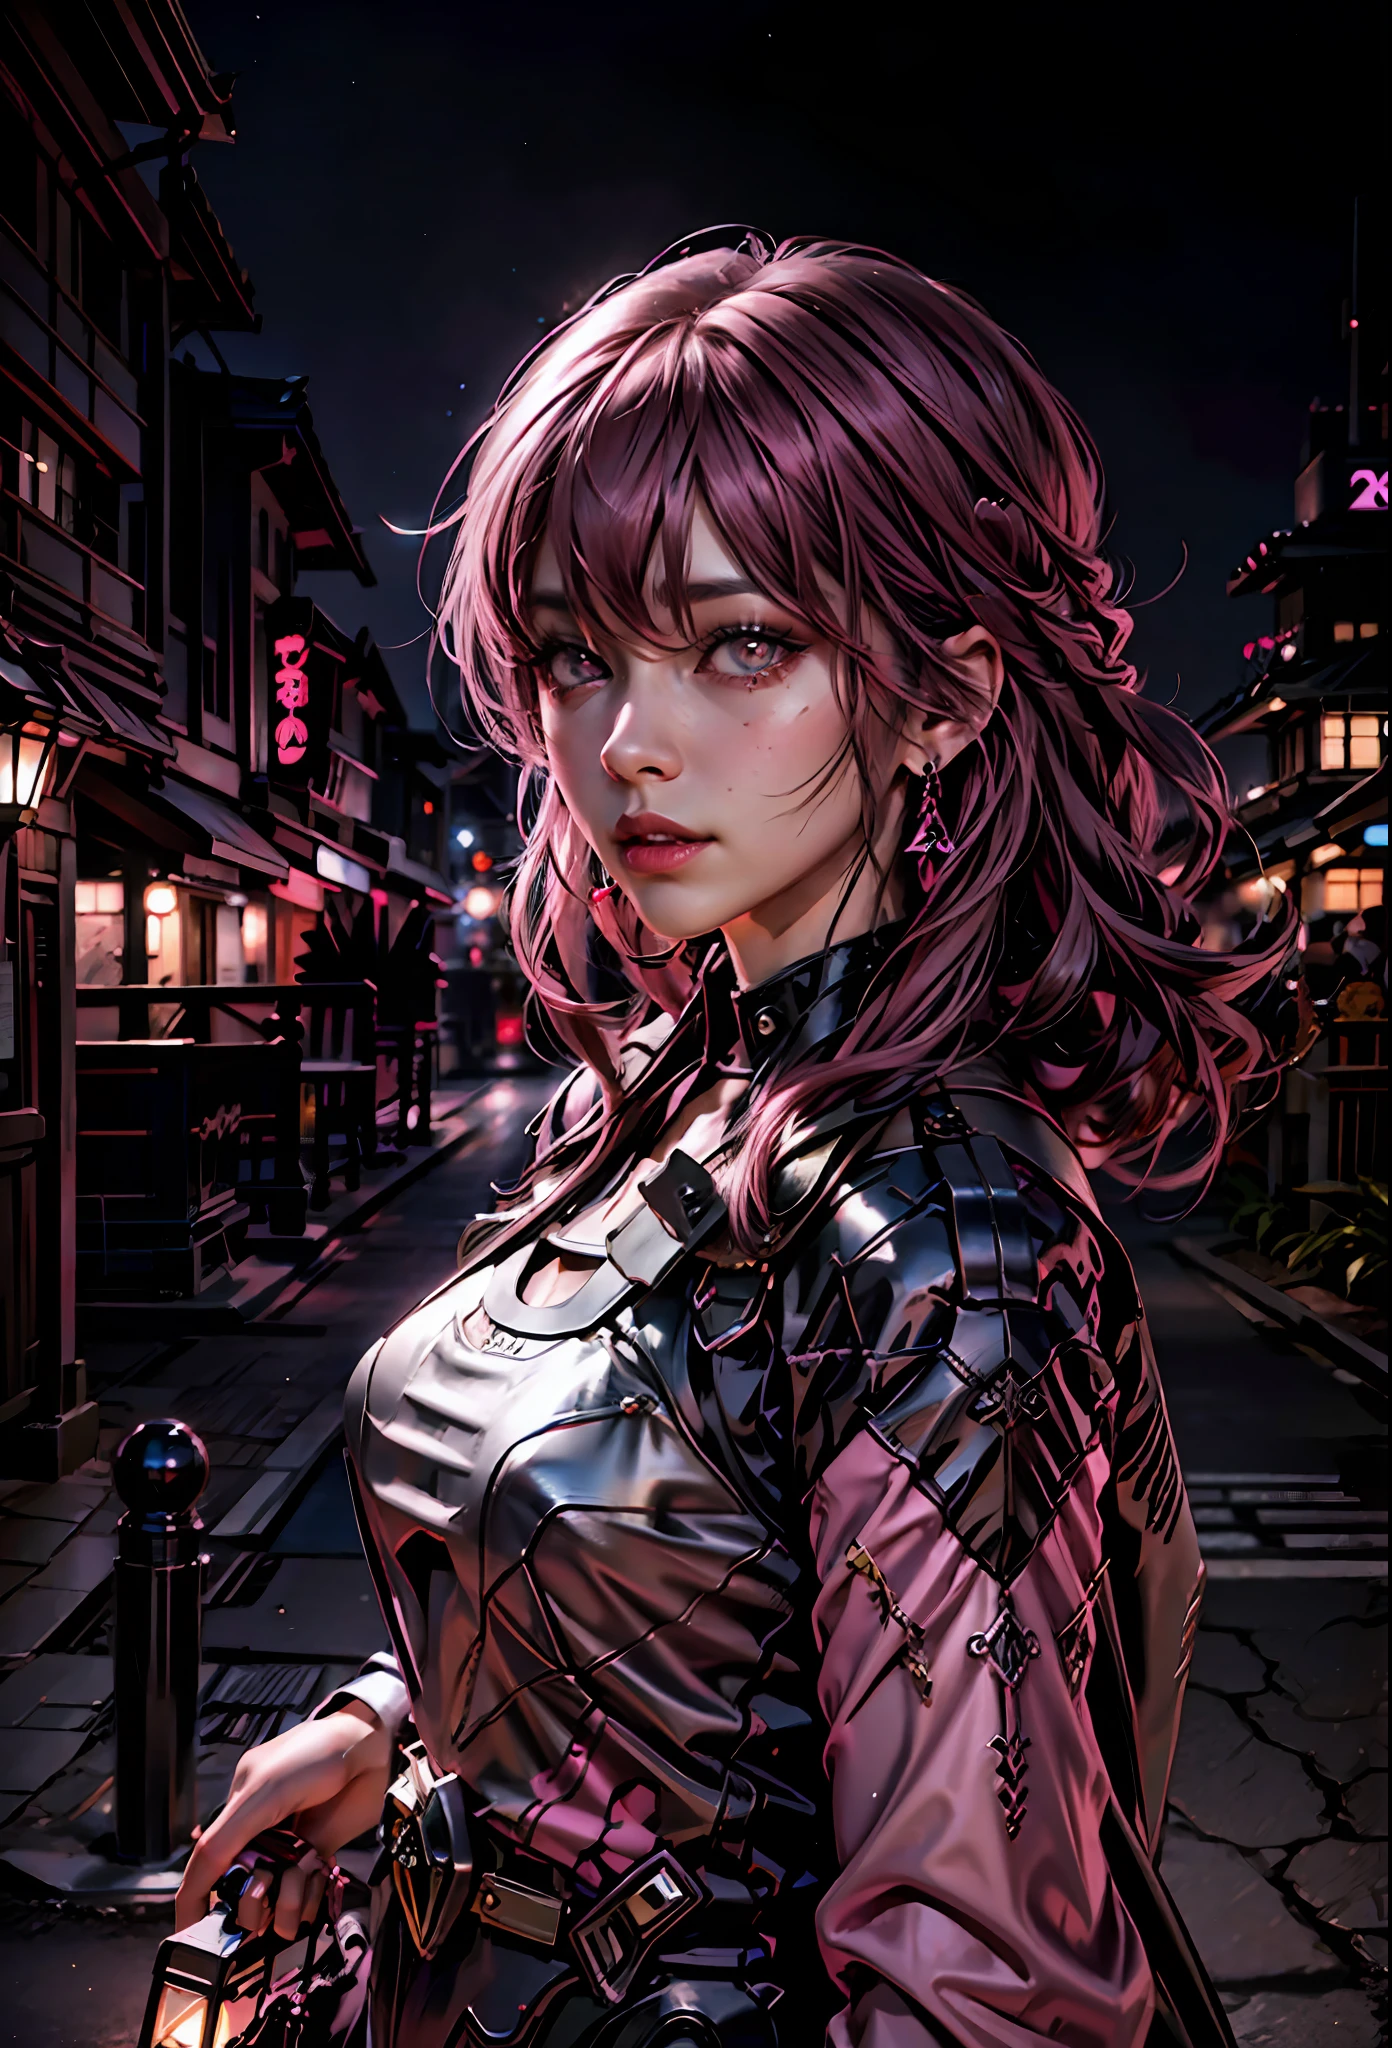 Schwarz Rosa ,Sexy Mädchen mit rosa Haaren, rosa Augen , im Hintergrund japanische Stadt bei Nacht,neben einem Lamborghini